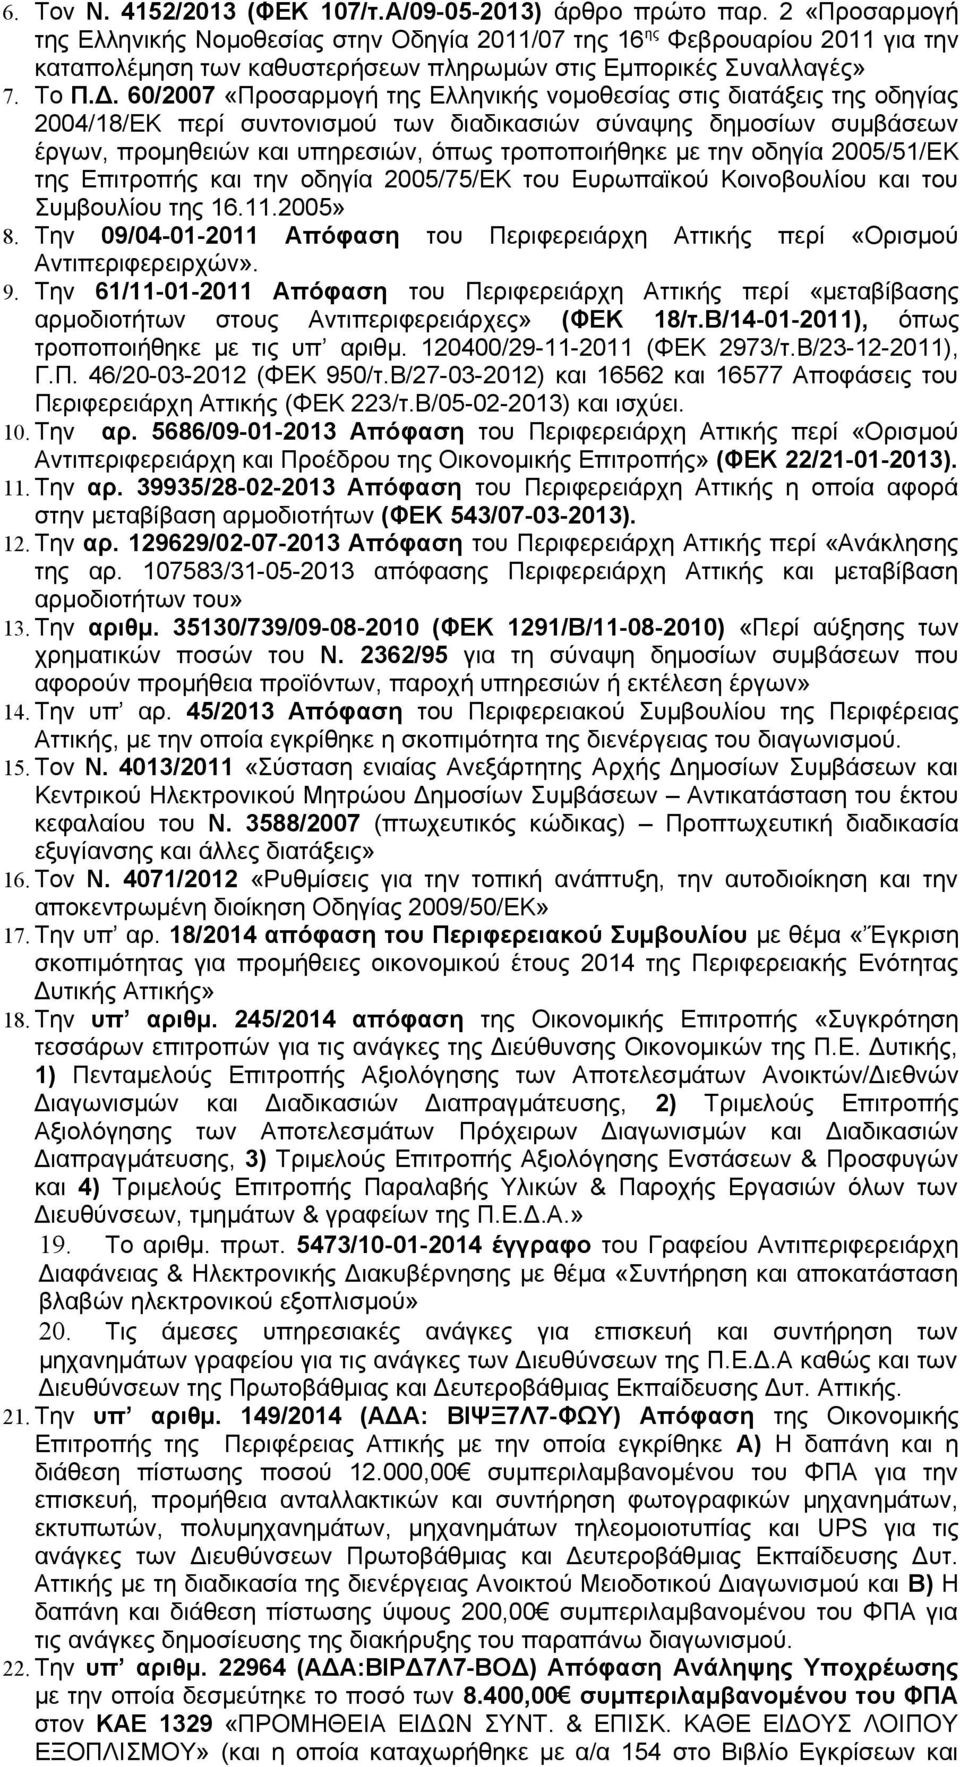 60/2007 «Προσαρμογή της Ελληνικής νομοθεσίας στις διατάξεις της οδηγίας 2004/8/ΕΚ περί συντονισμού των διαδικασιών σύναψης δημοσίων συμβάσεων έργων, προμηθειών και υπηρεσιών, όπως τροποποιήθηκε με